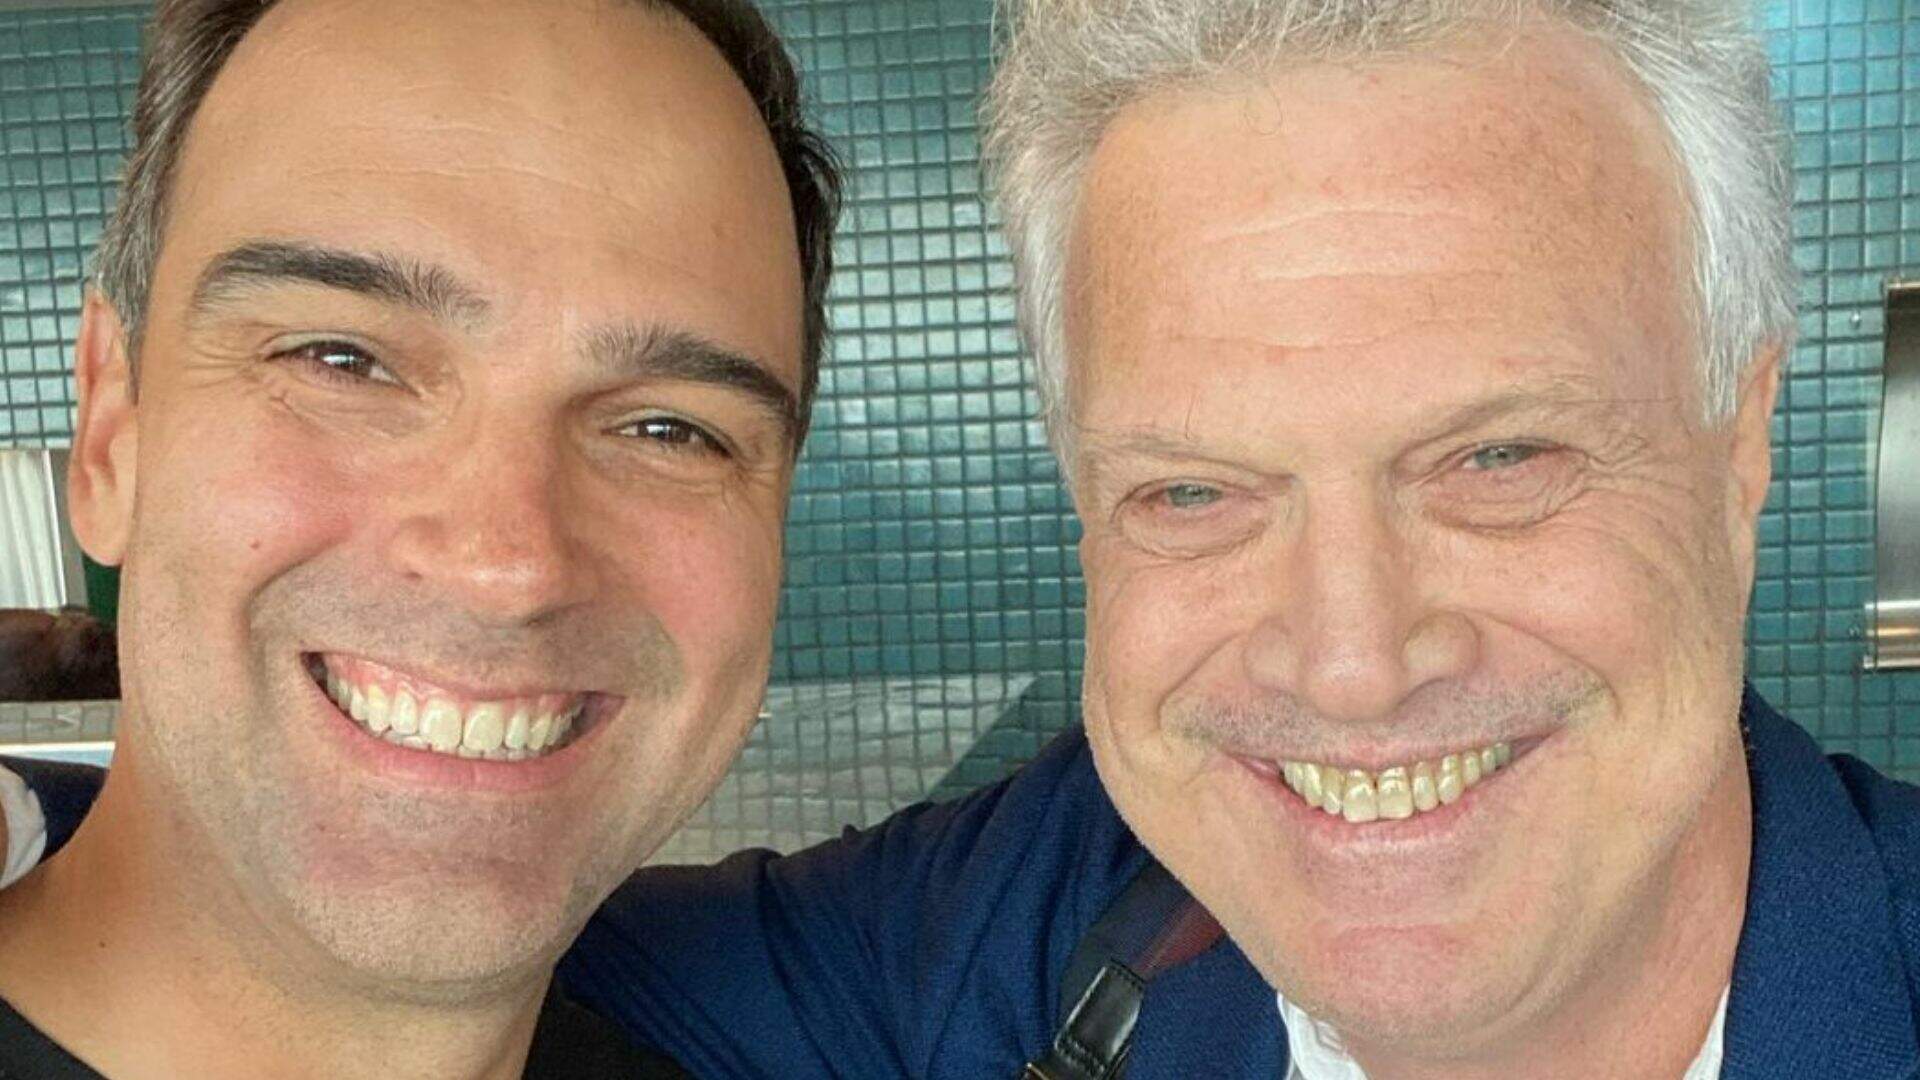 Tadeu Schmidt e Pedro Bial se encontram em voo e web comemora: “Encontro de milhões” - Metropolitana FM